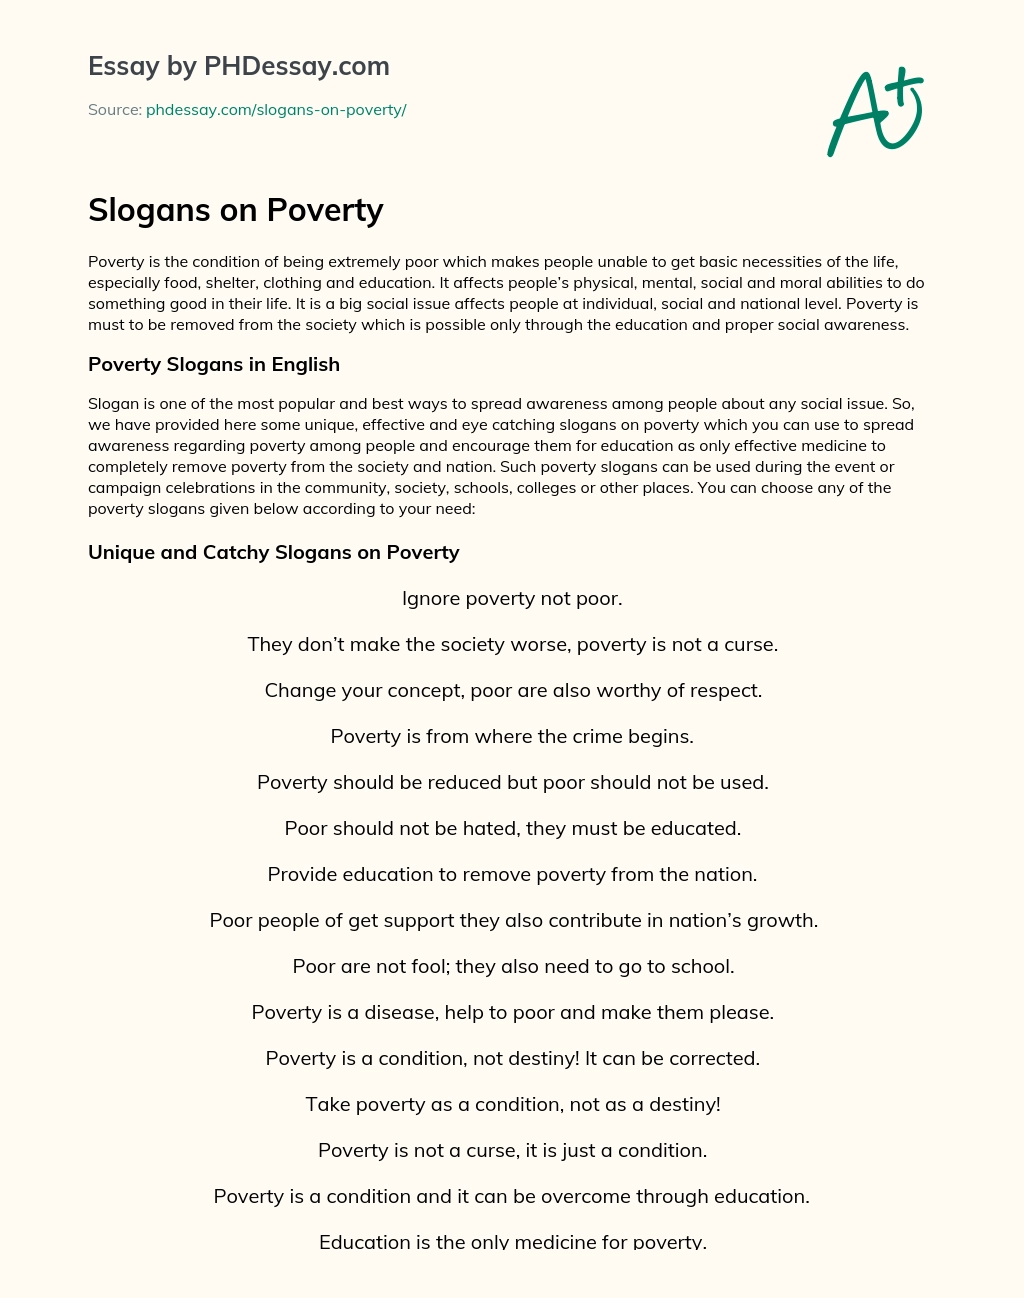 Slogans on Poverty essay